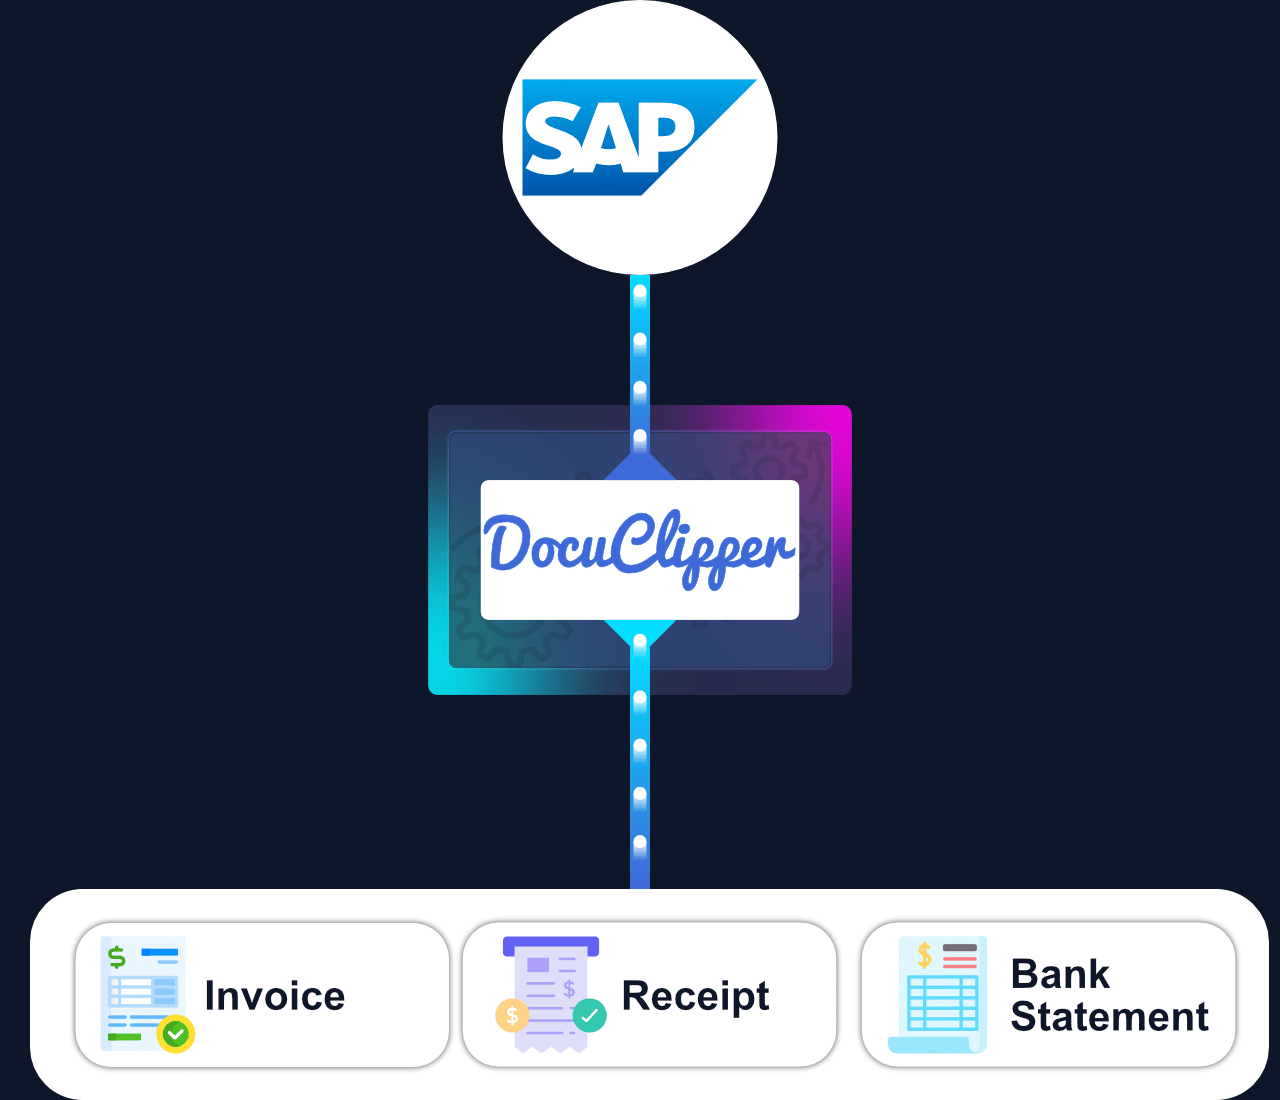 DocuClipper SAP OCR technology